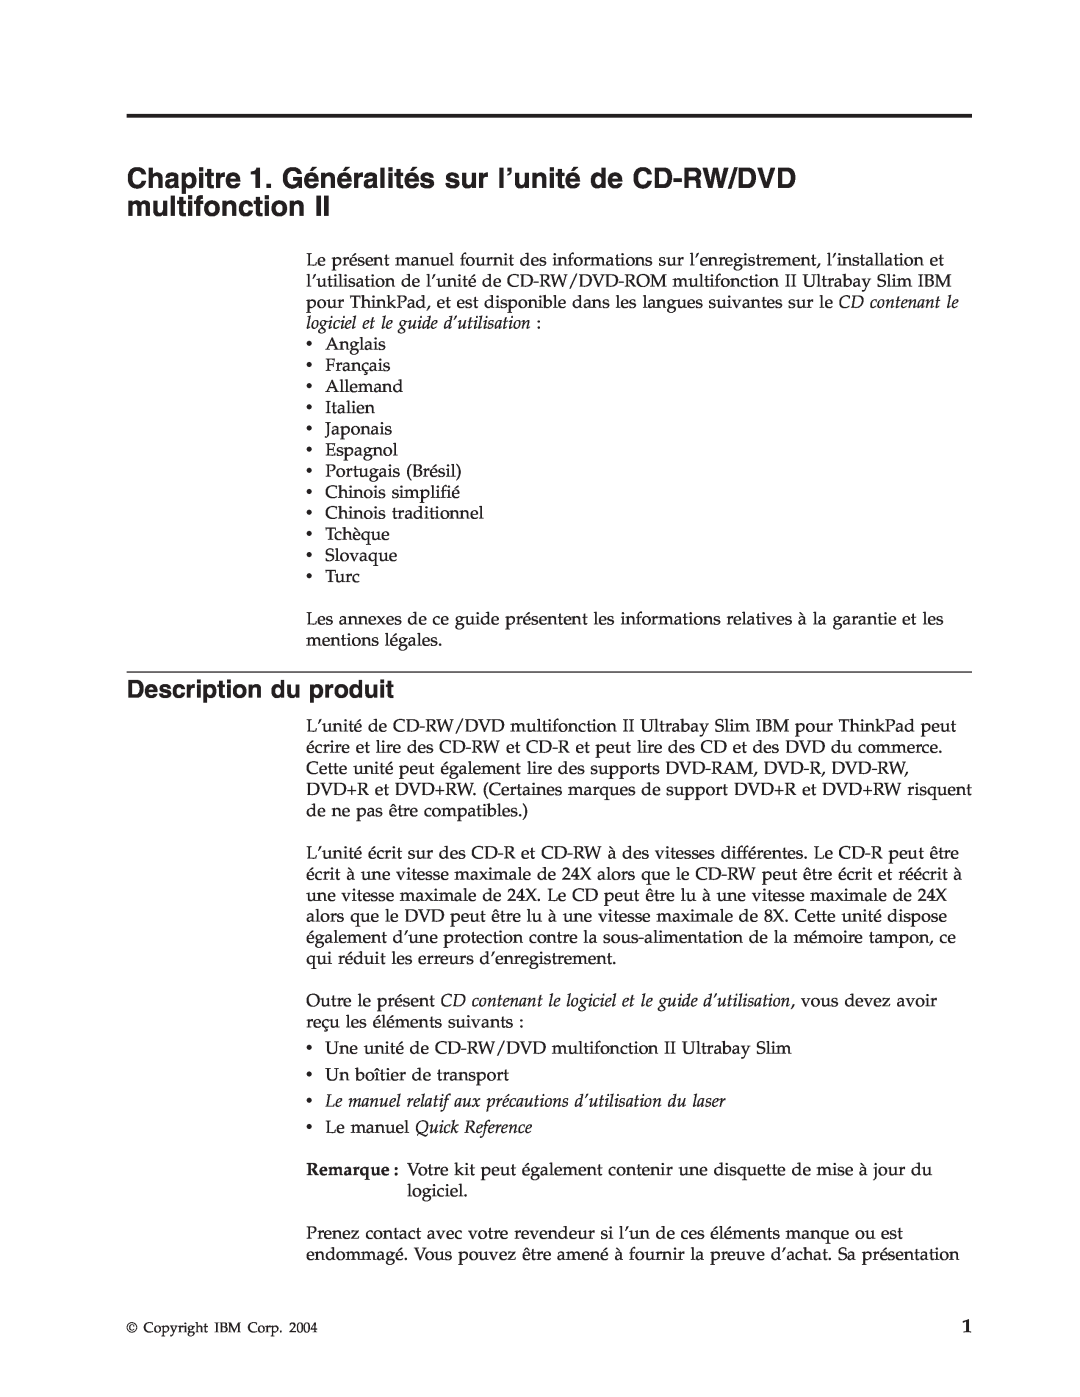 IBM 73P3292 manual Chapitre 1. Généralités sur l’unité de CD-RW/DVD multifonction, Description du produit 